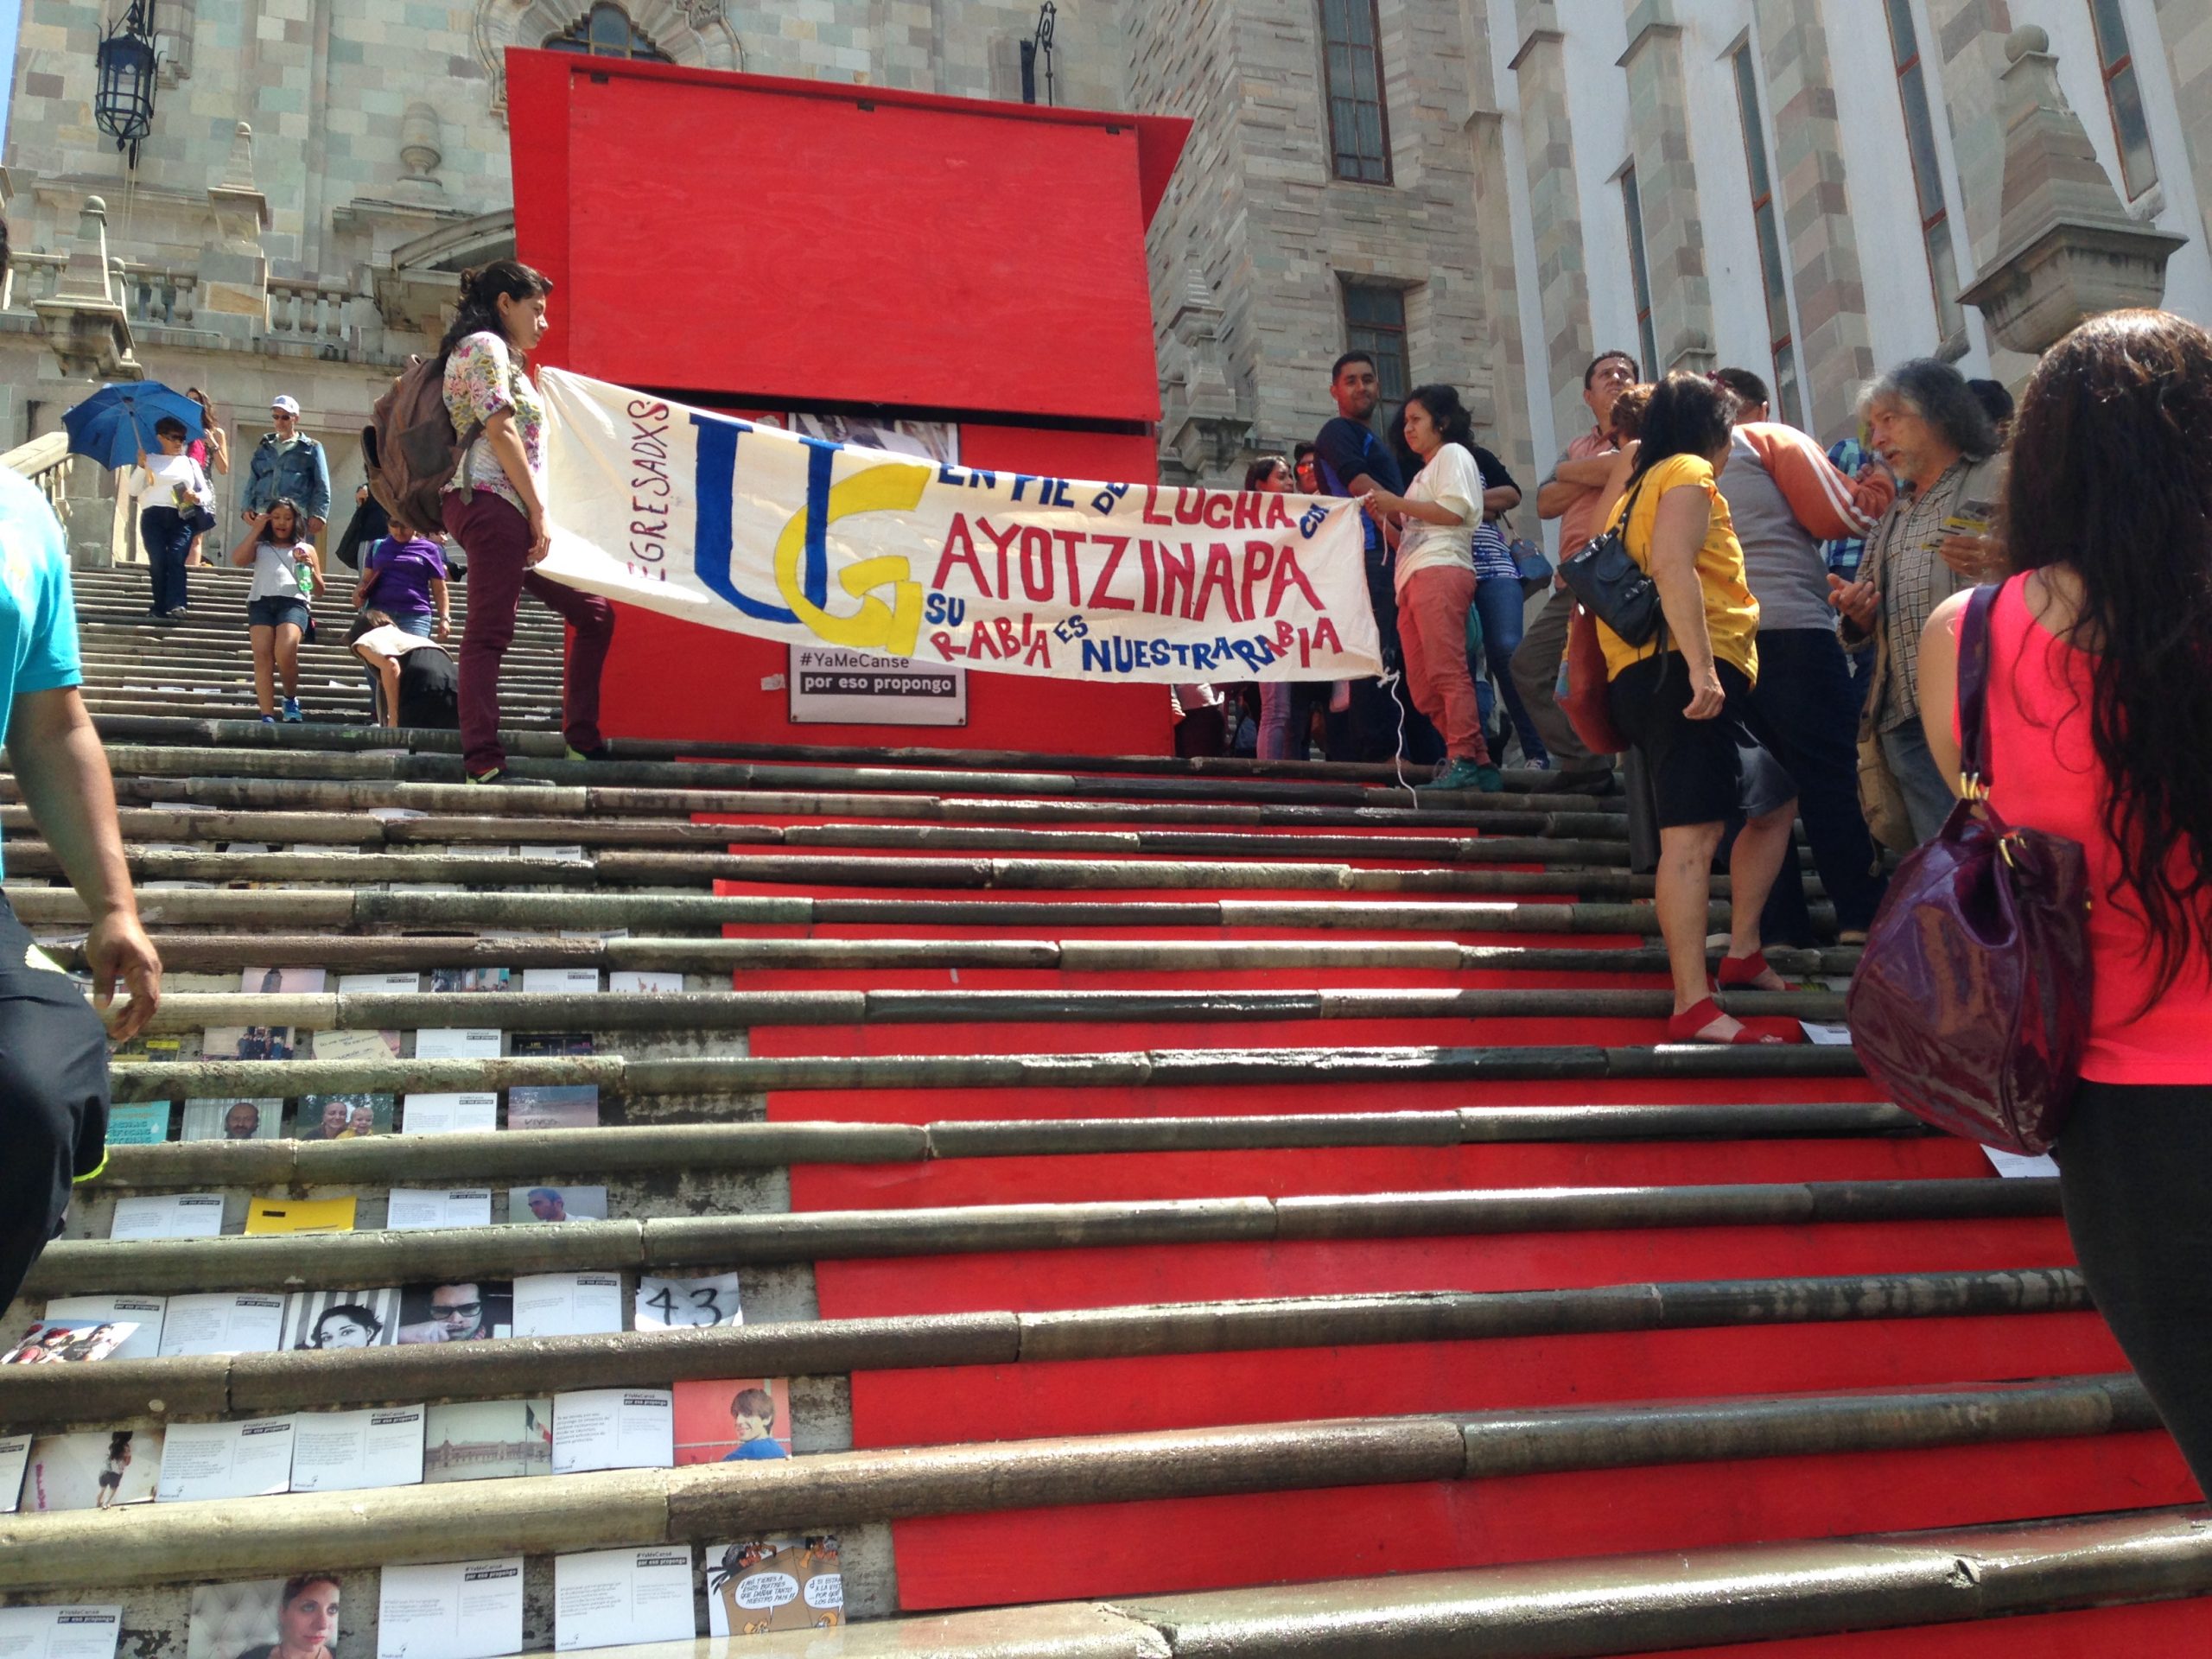 #NiUnMinutoDeSilencio, Universidad de Guanajuato, 23 de julio, 2015